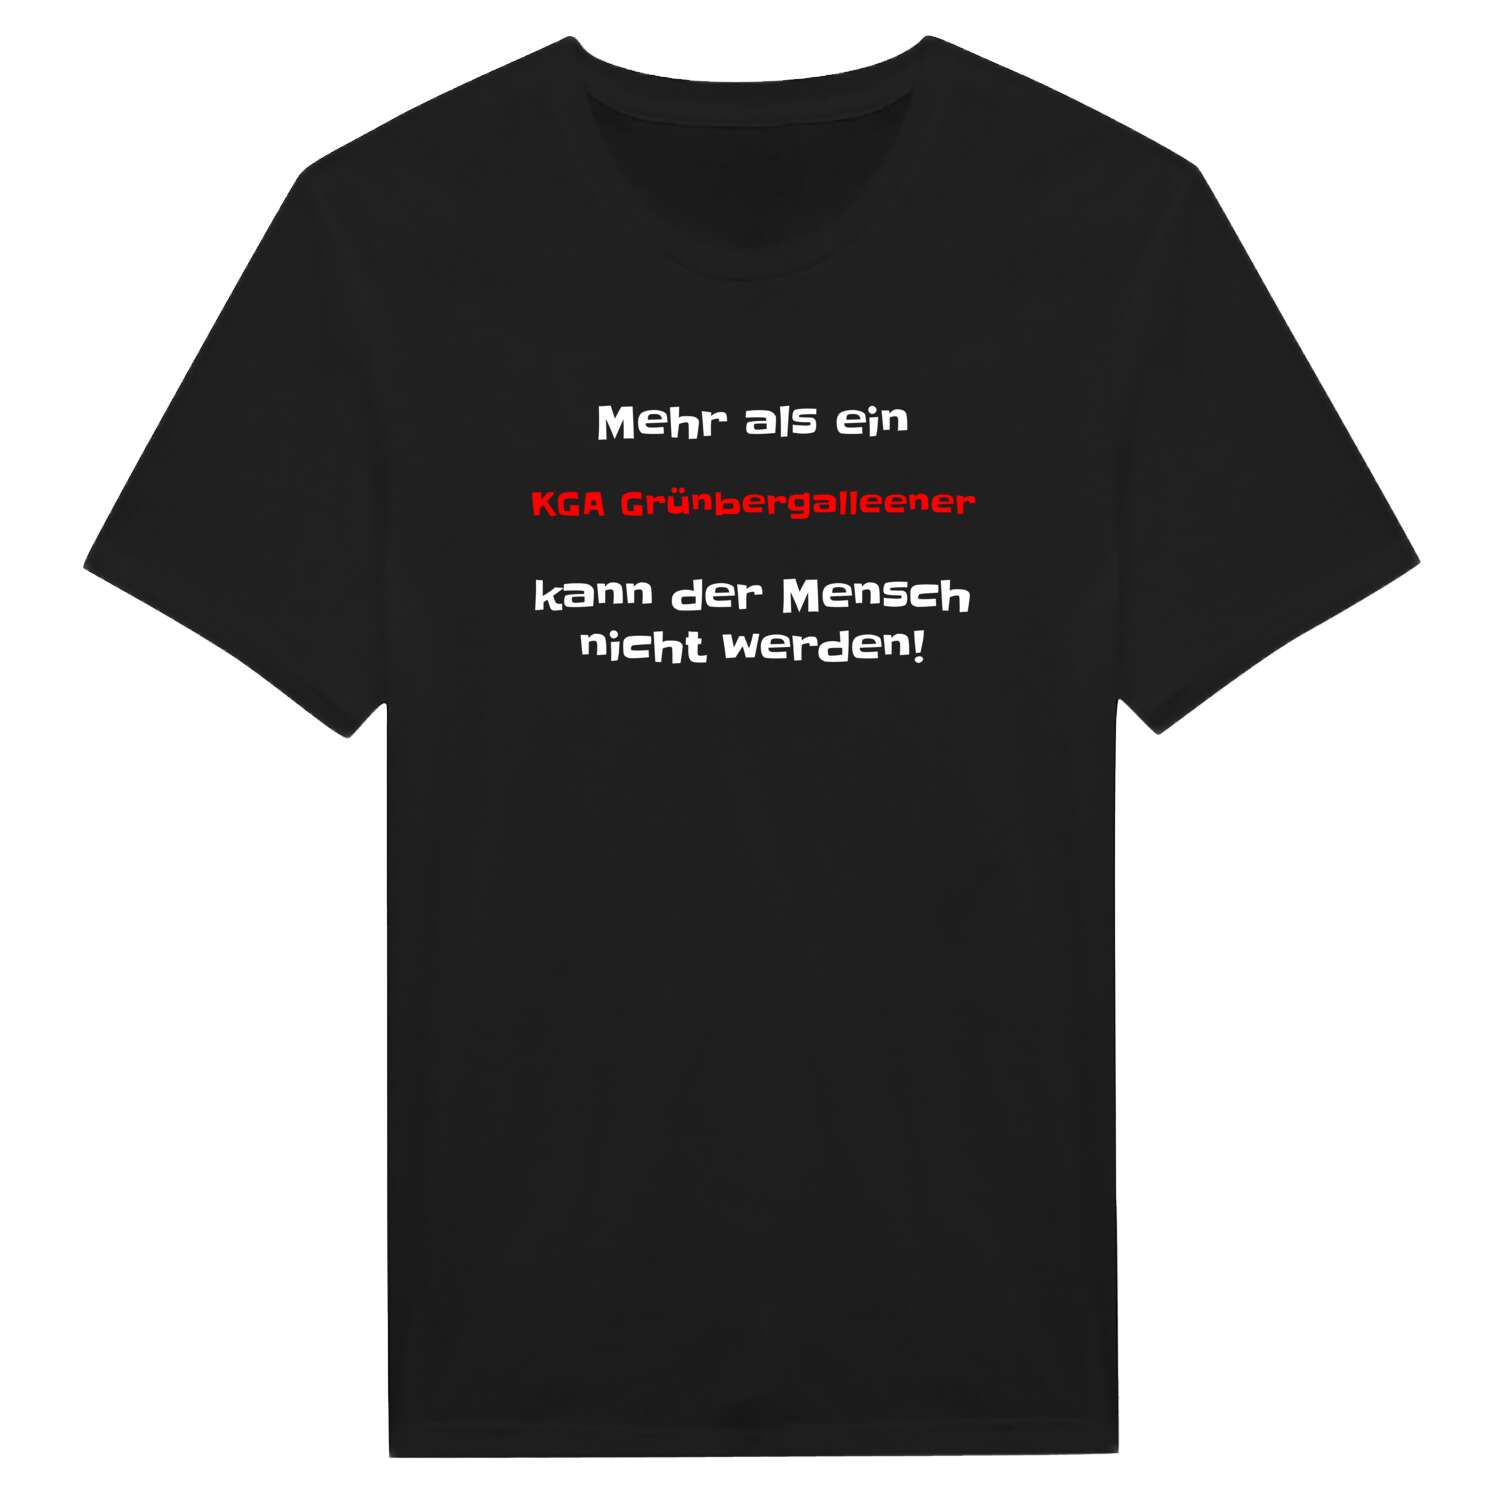 KGA Grünbergallee T-Shirt »Mehr als ein«